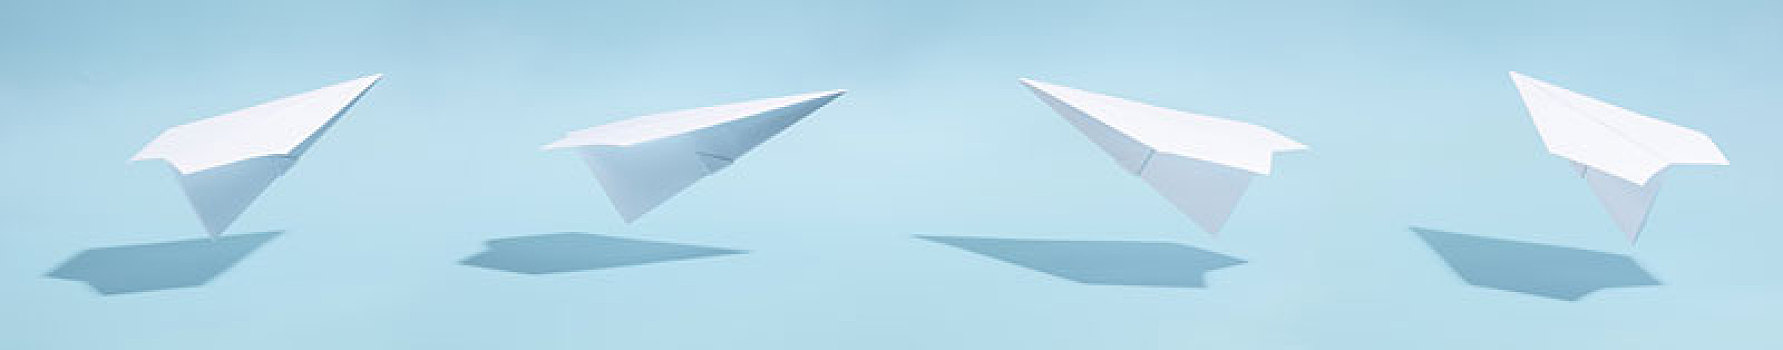 纸飞机,极简主义